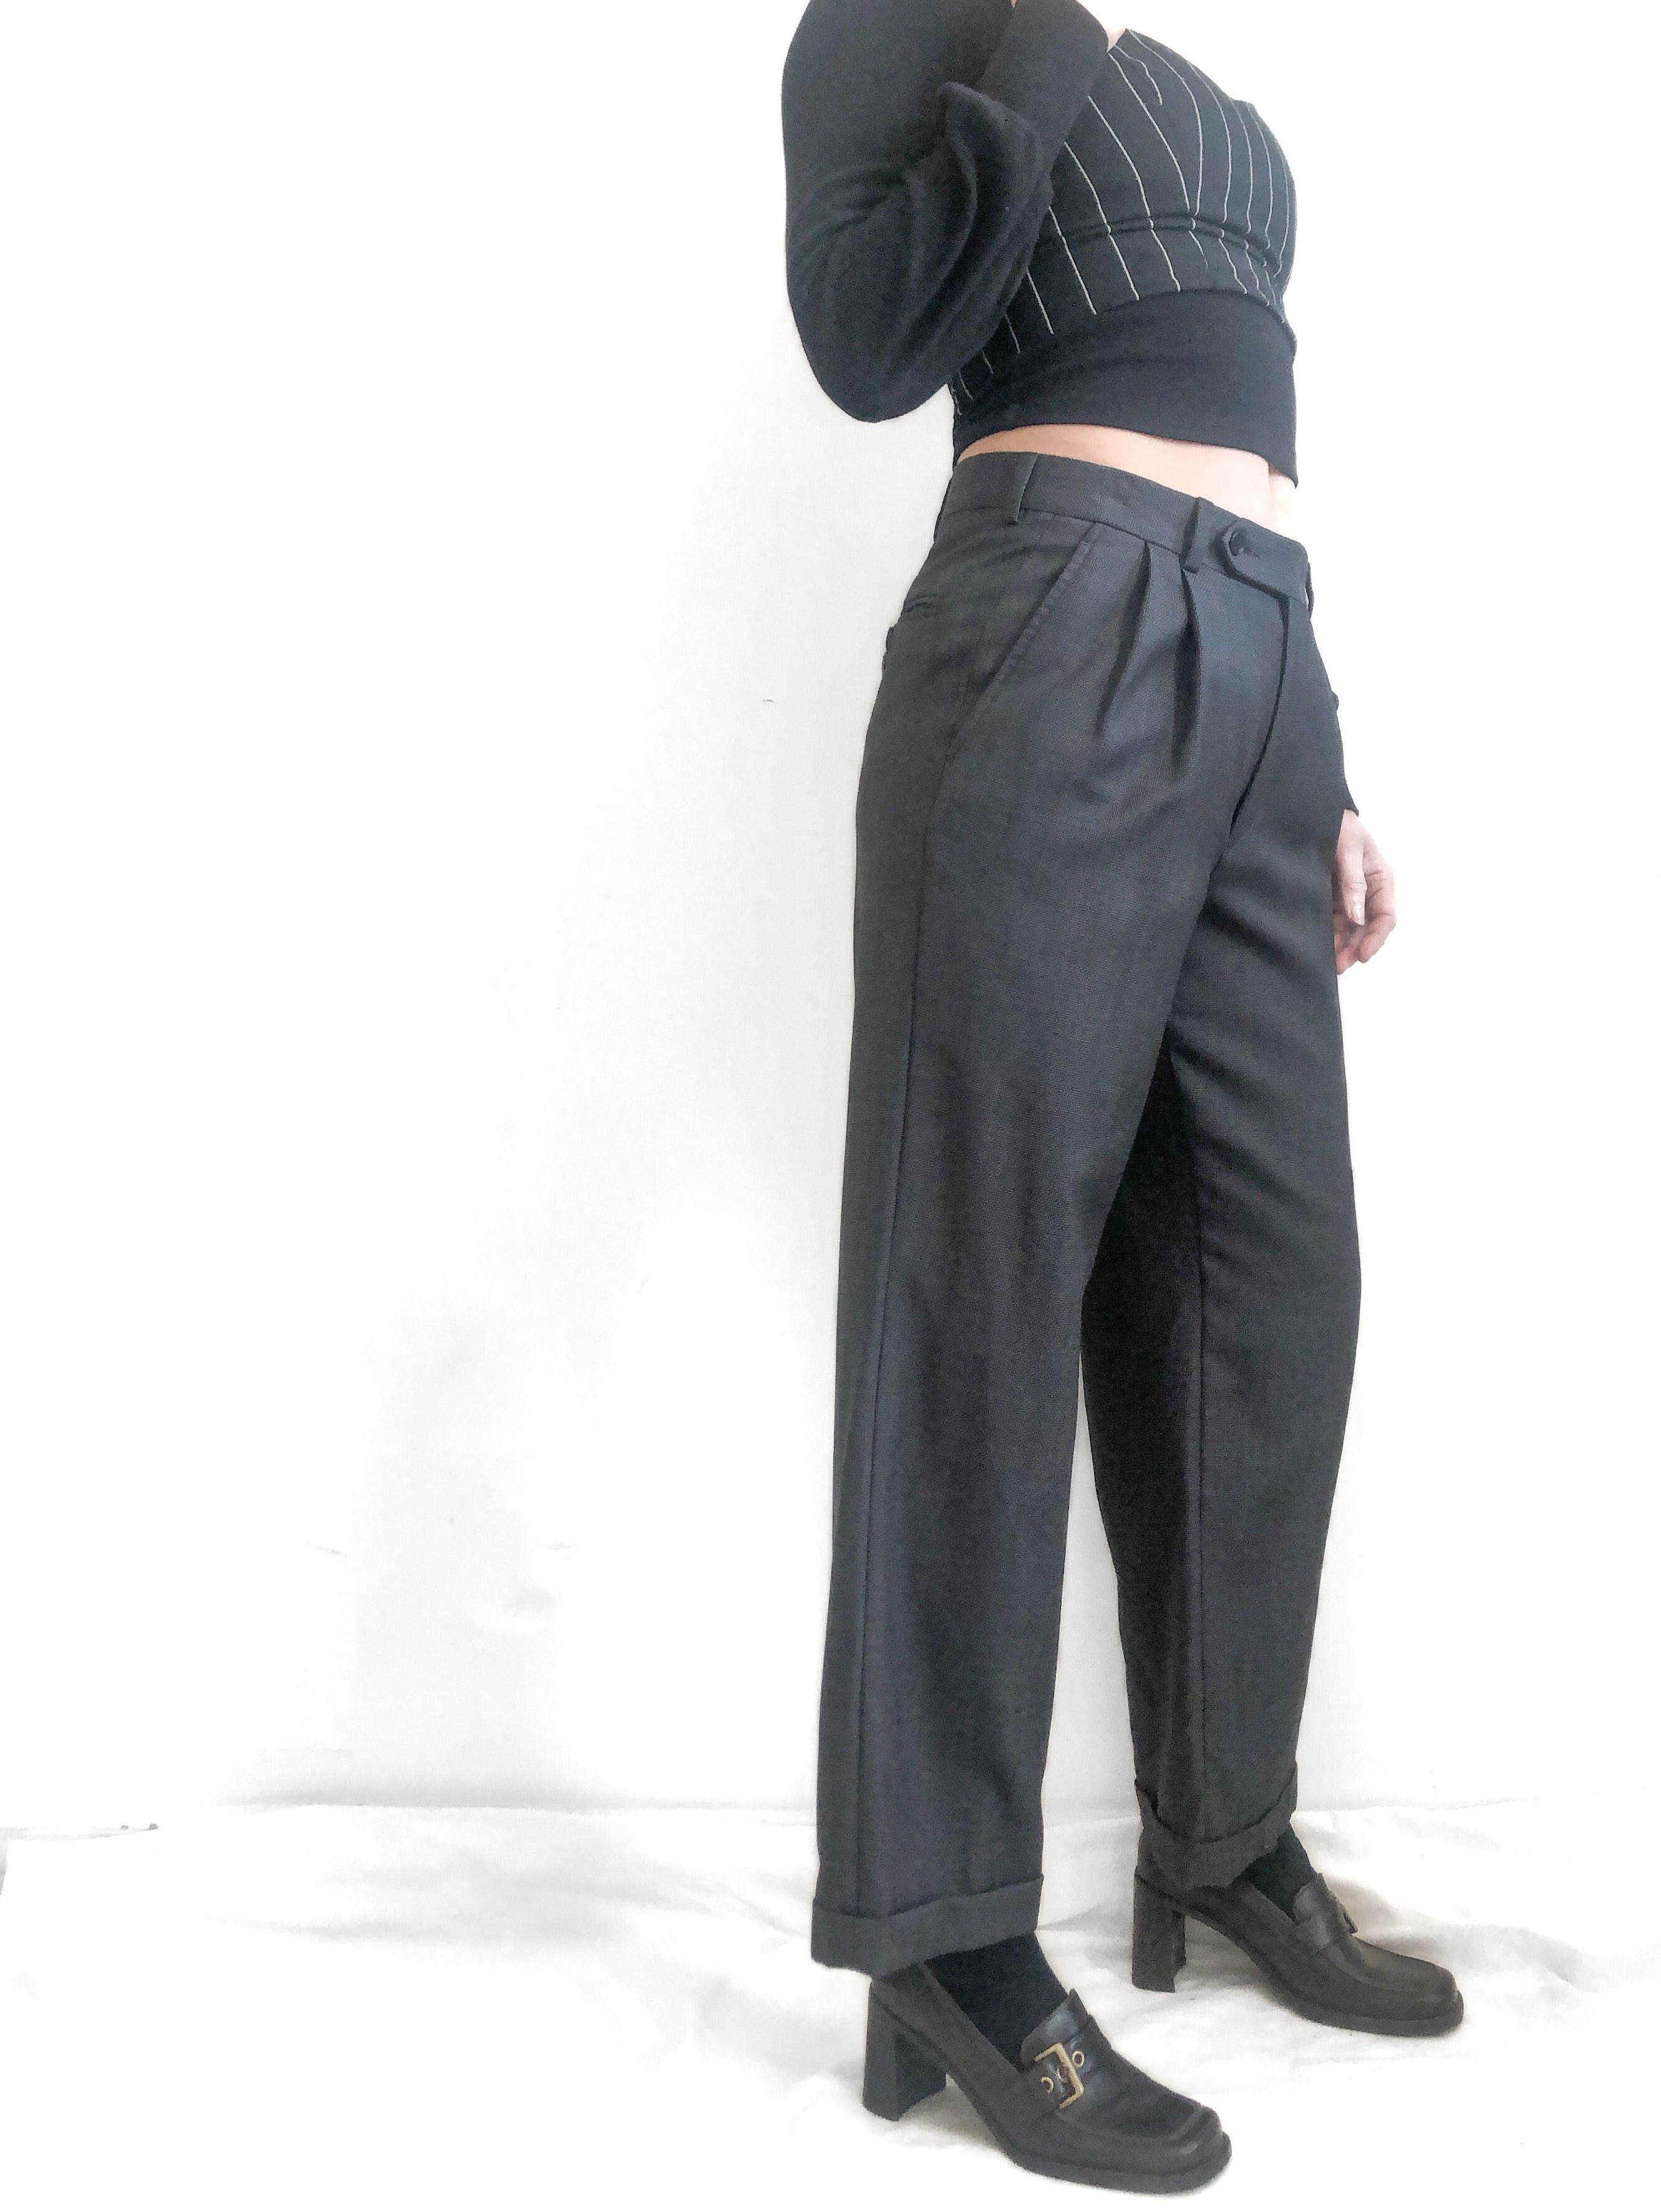 Oscar De La Renta Grey Wool Trousers, 29" Waist, Unisex Clothing